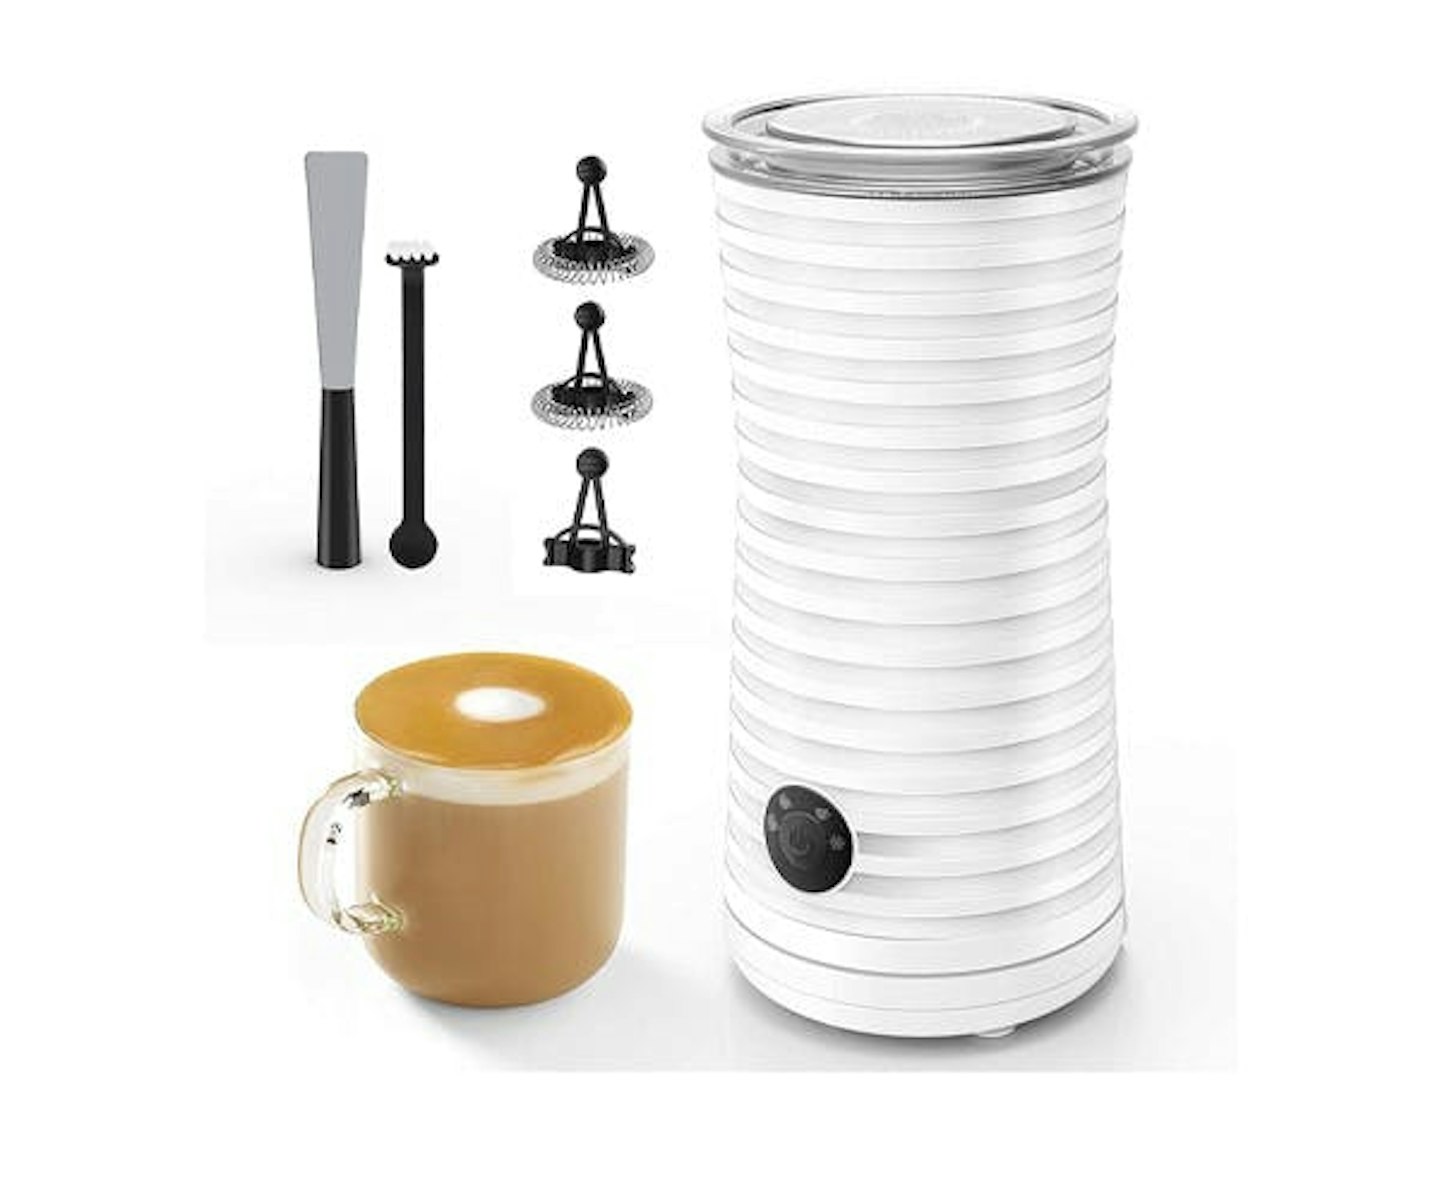 Nespresso Aeroccino4 Milk Frother VS Lavazza A Modo Mio MilkEasy Milk  Frother REVIEWS 